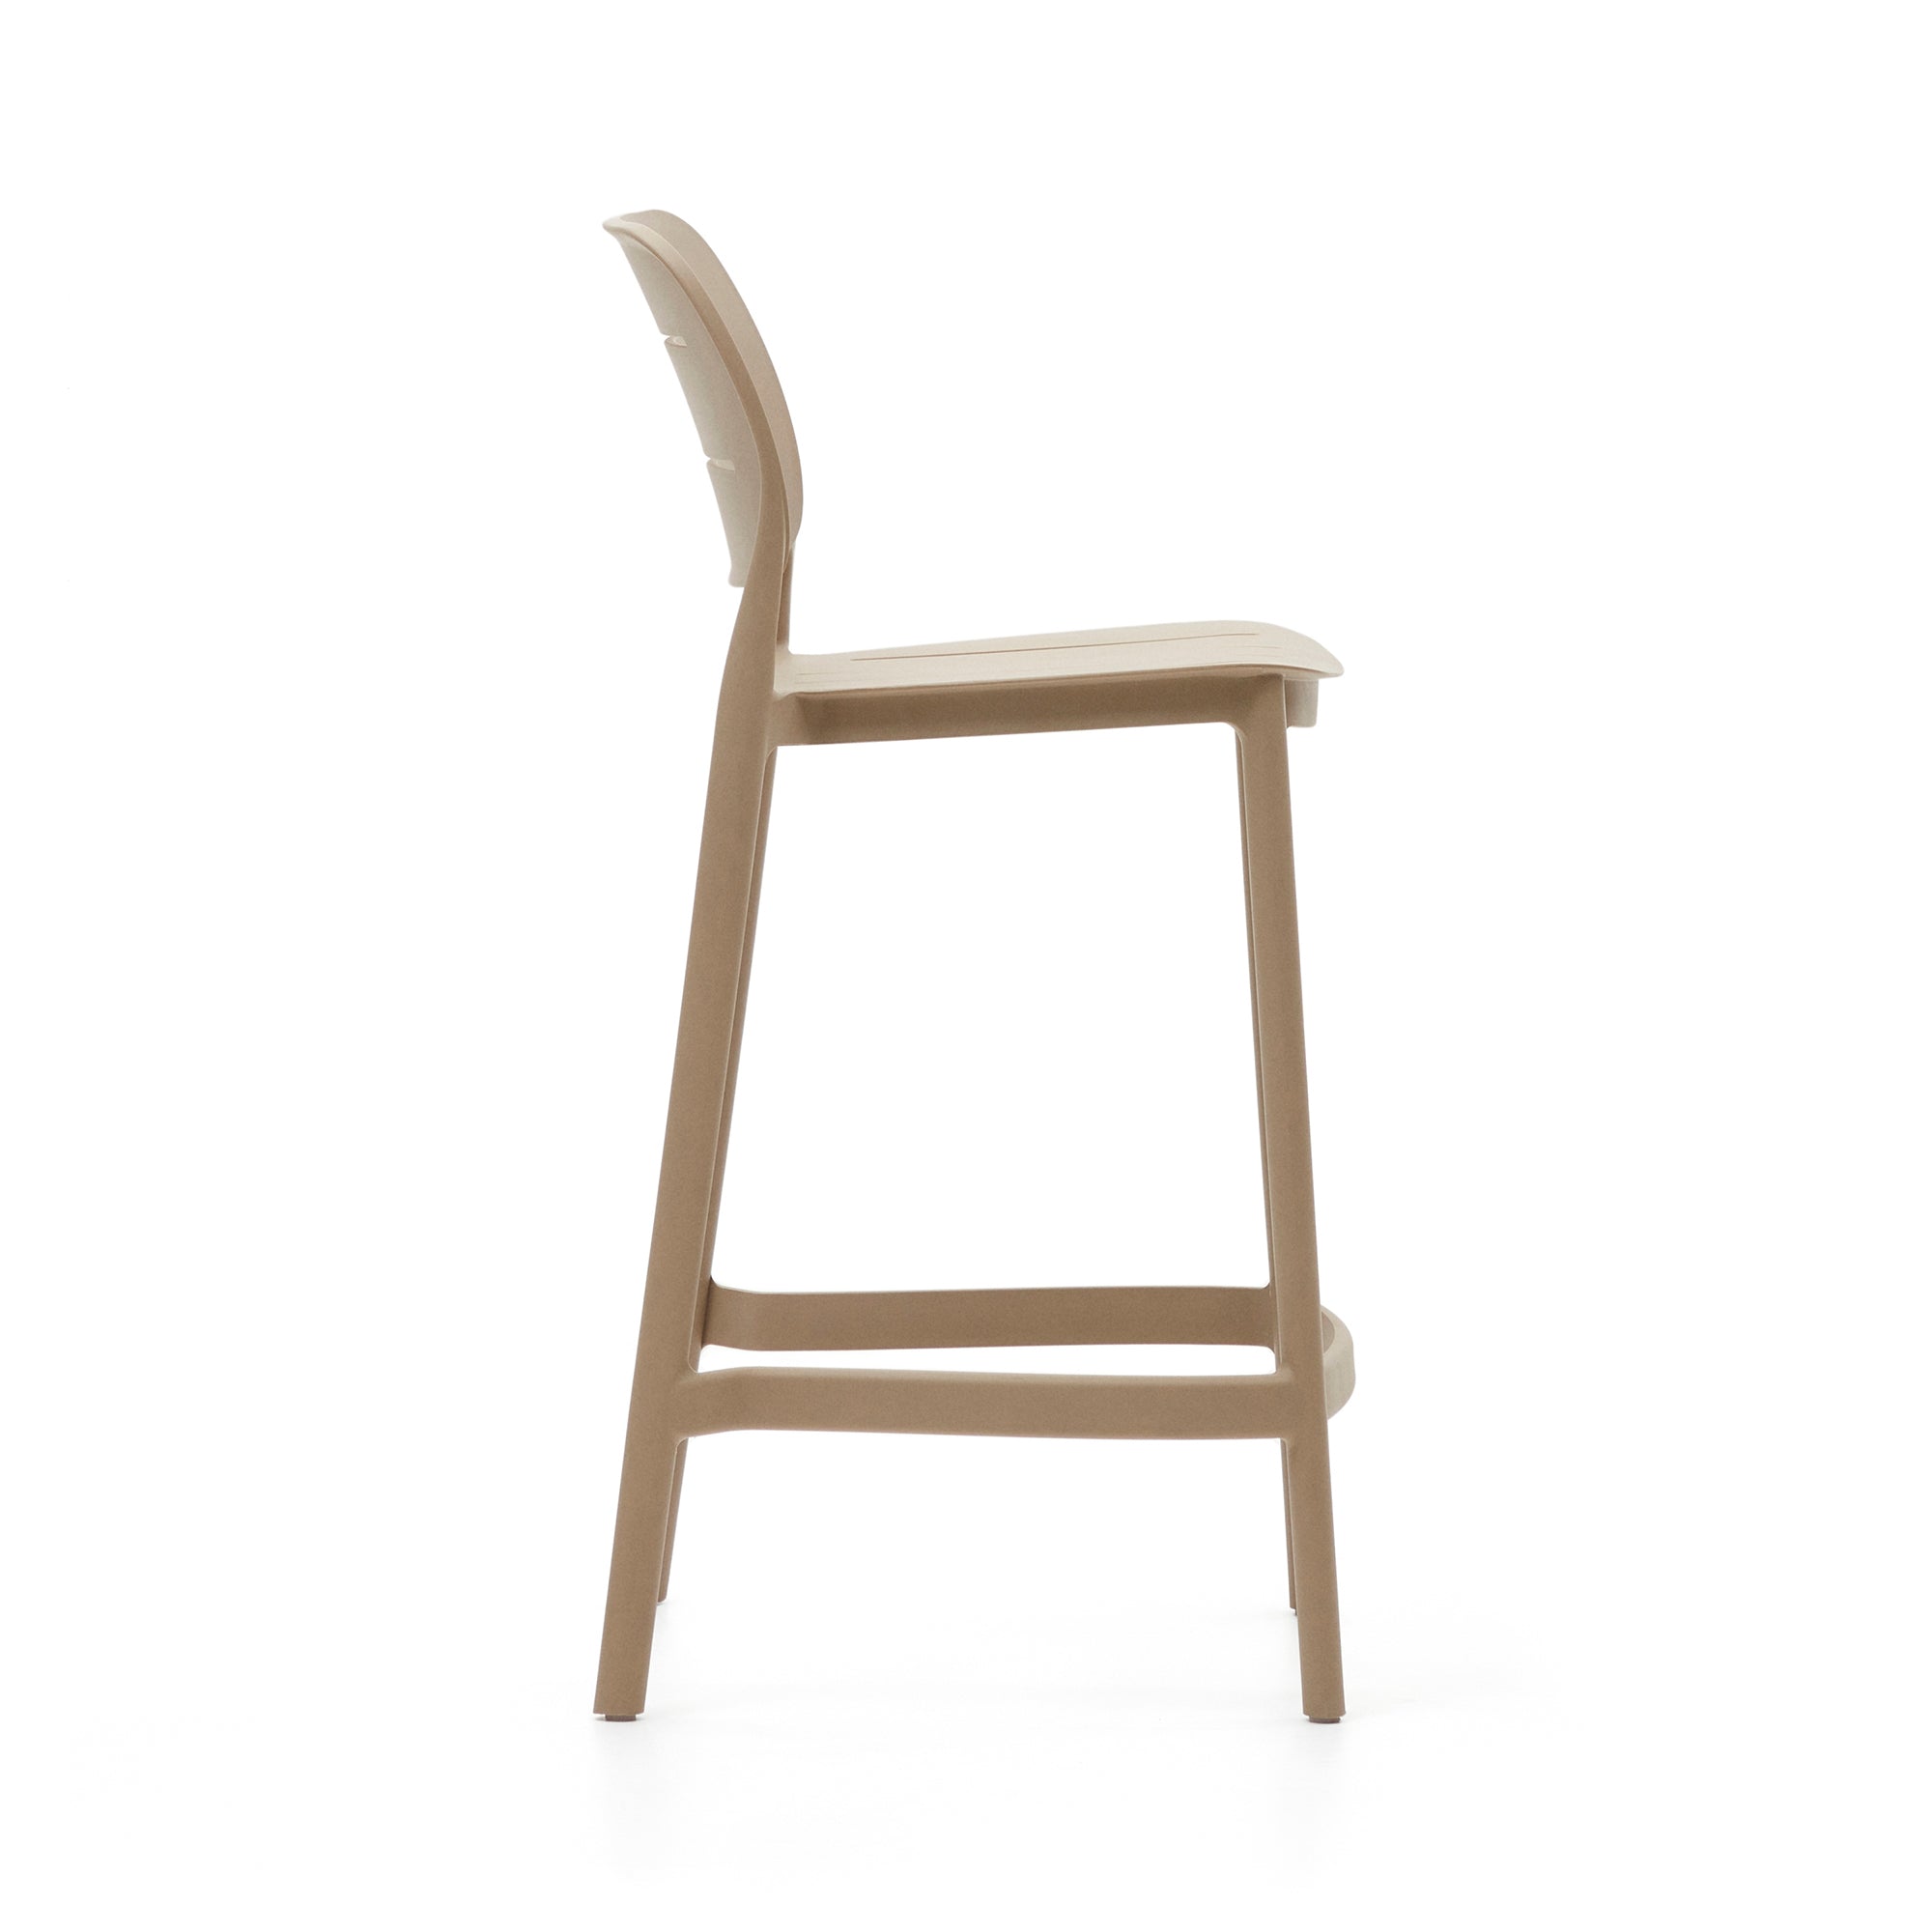 Morella egymásra rakható kültéri szék bézs színben, 65 cm magasságban